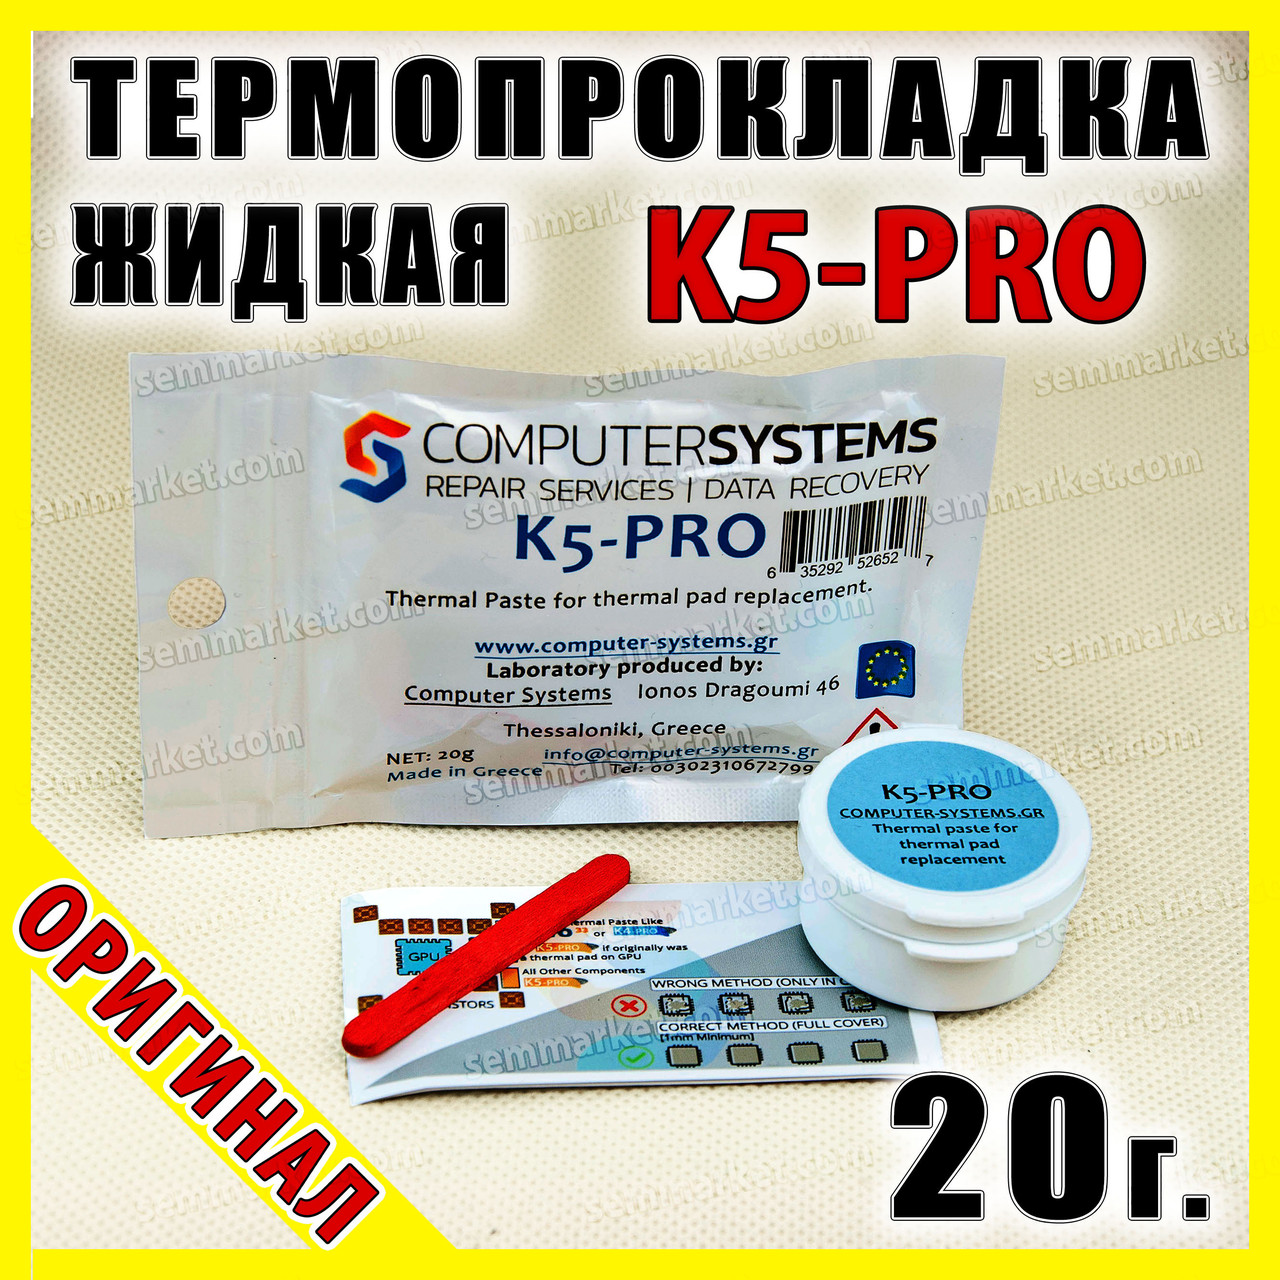 Термопрокладка рідка K5-PRO Греція 5.3W 20г оригінал термоінтерфейс термогель терможвачка